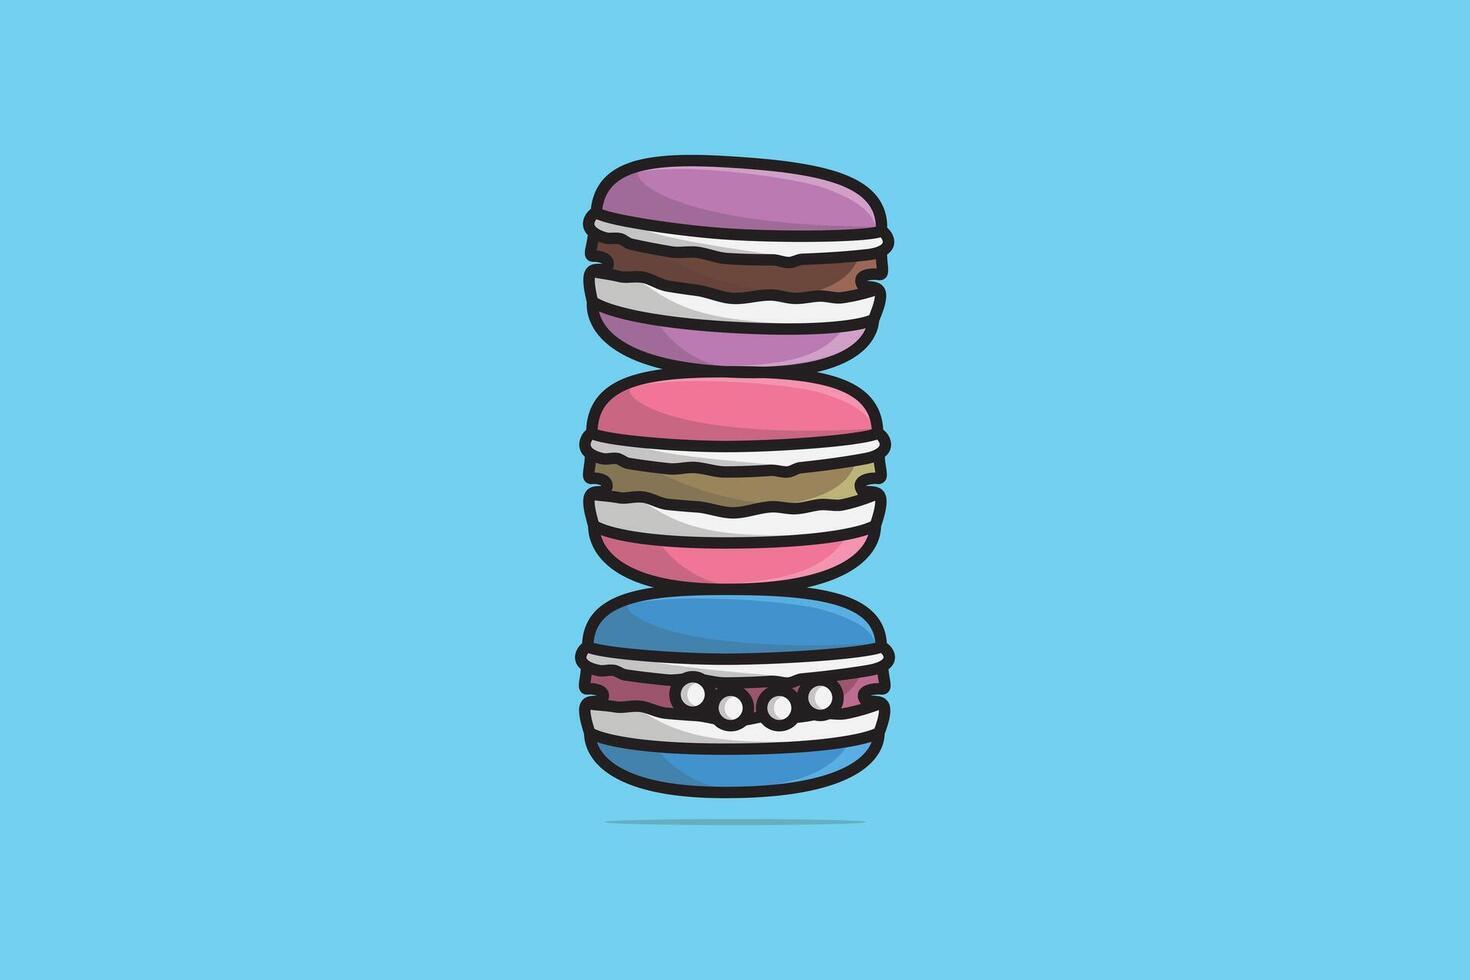 reeks van donuts met suikerglazuur vector illustratie.